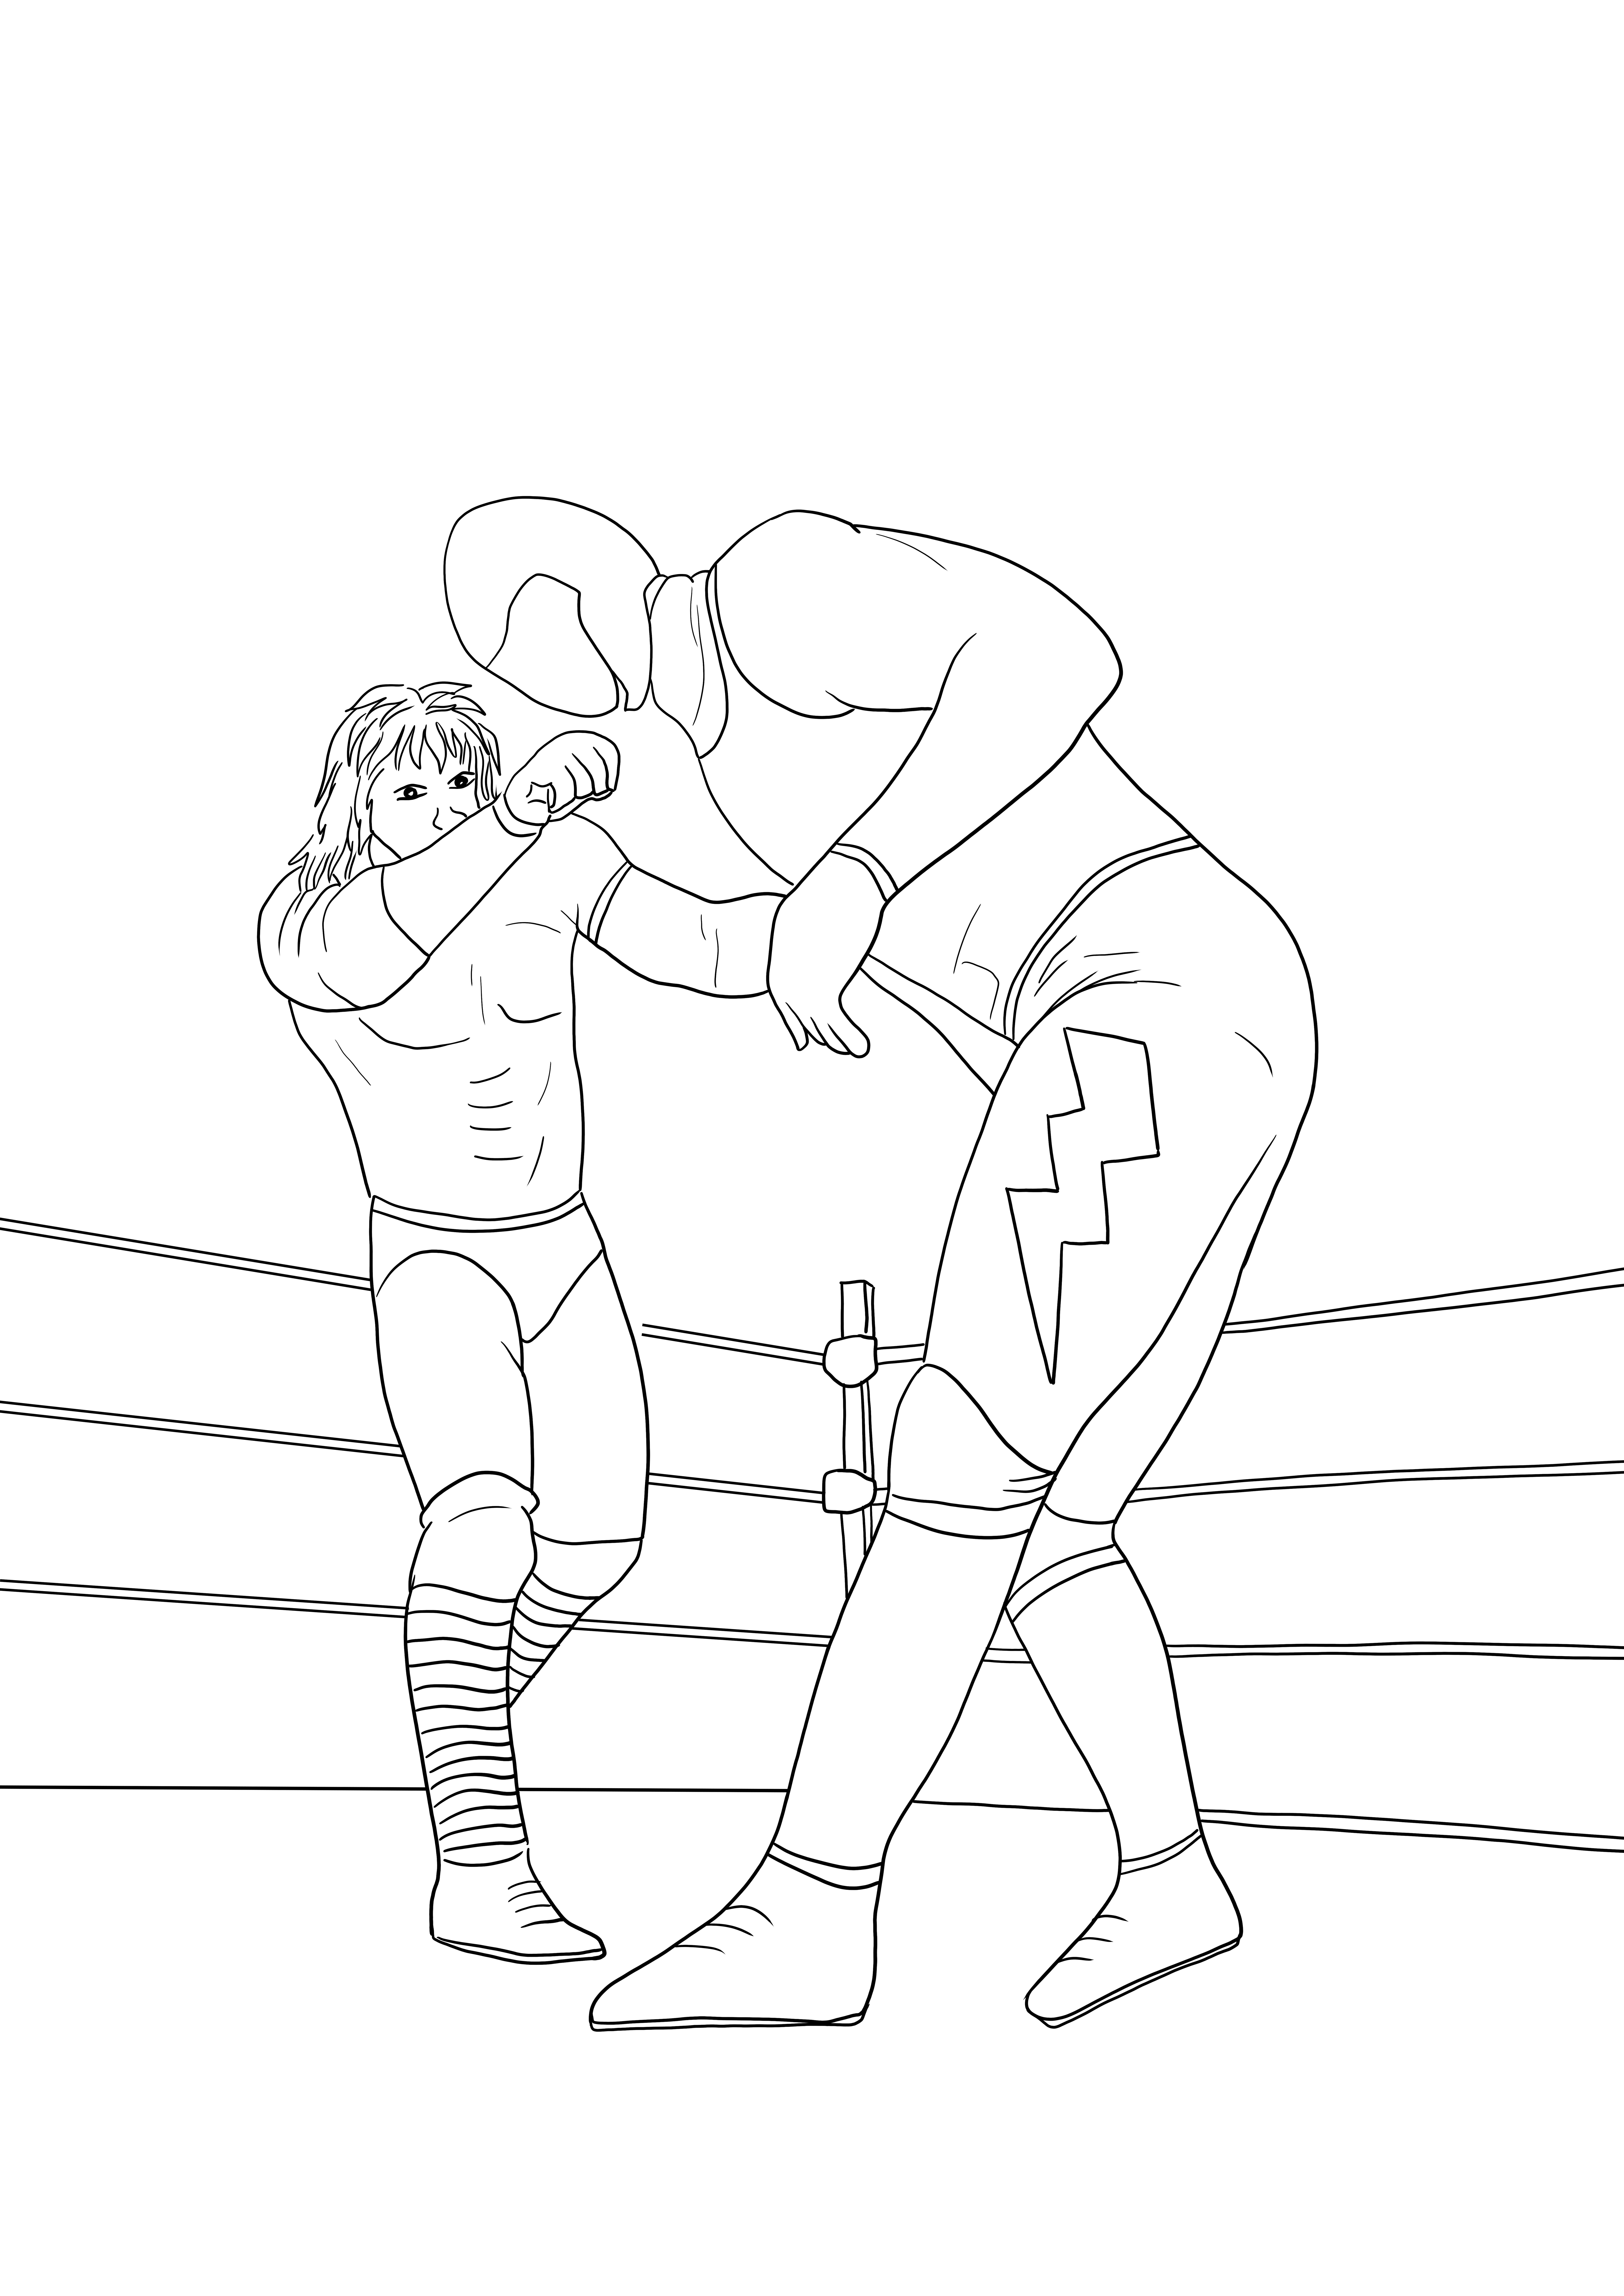 Imagen para colorear e imprimir gratis de WWE luchando en un ring